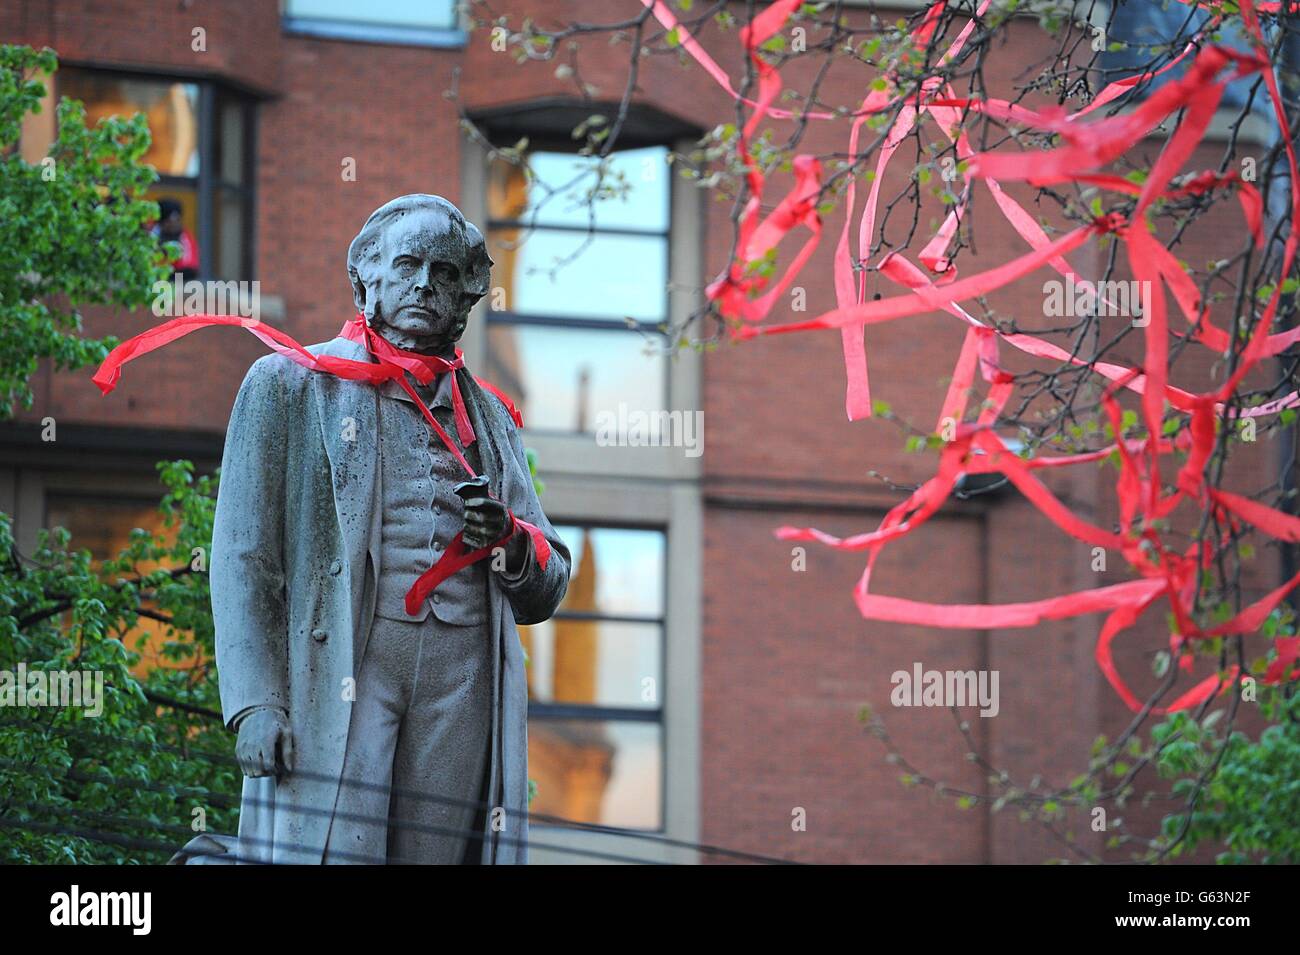 La statue de John Bright a un ruban rouge autour de son cou pendant le défilé des vainqueurs de la Barclays Premier League à travers Manchester. Banque D'Images